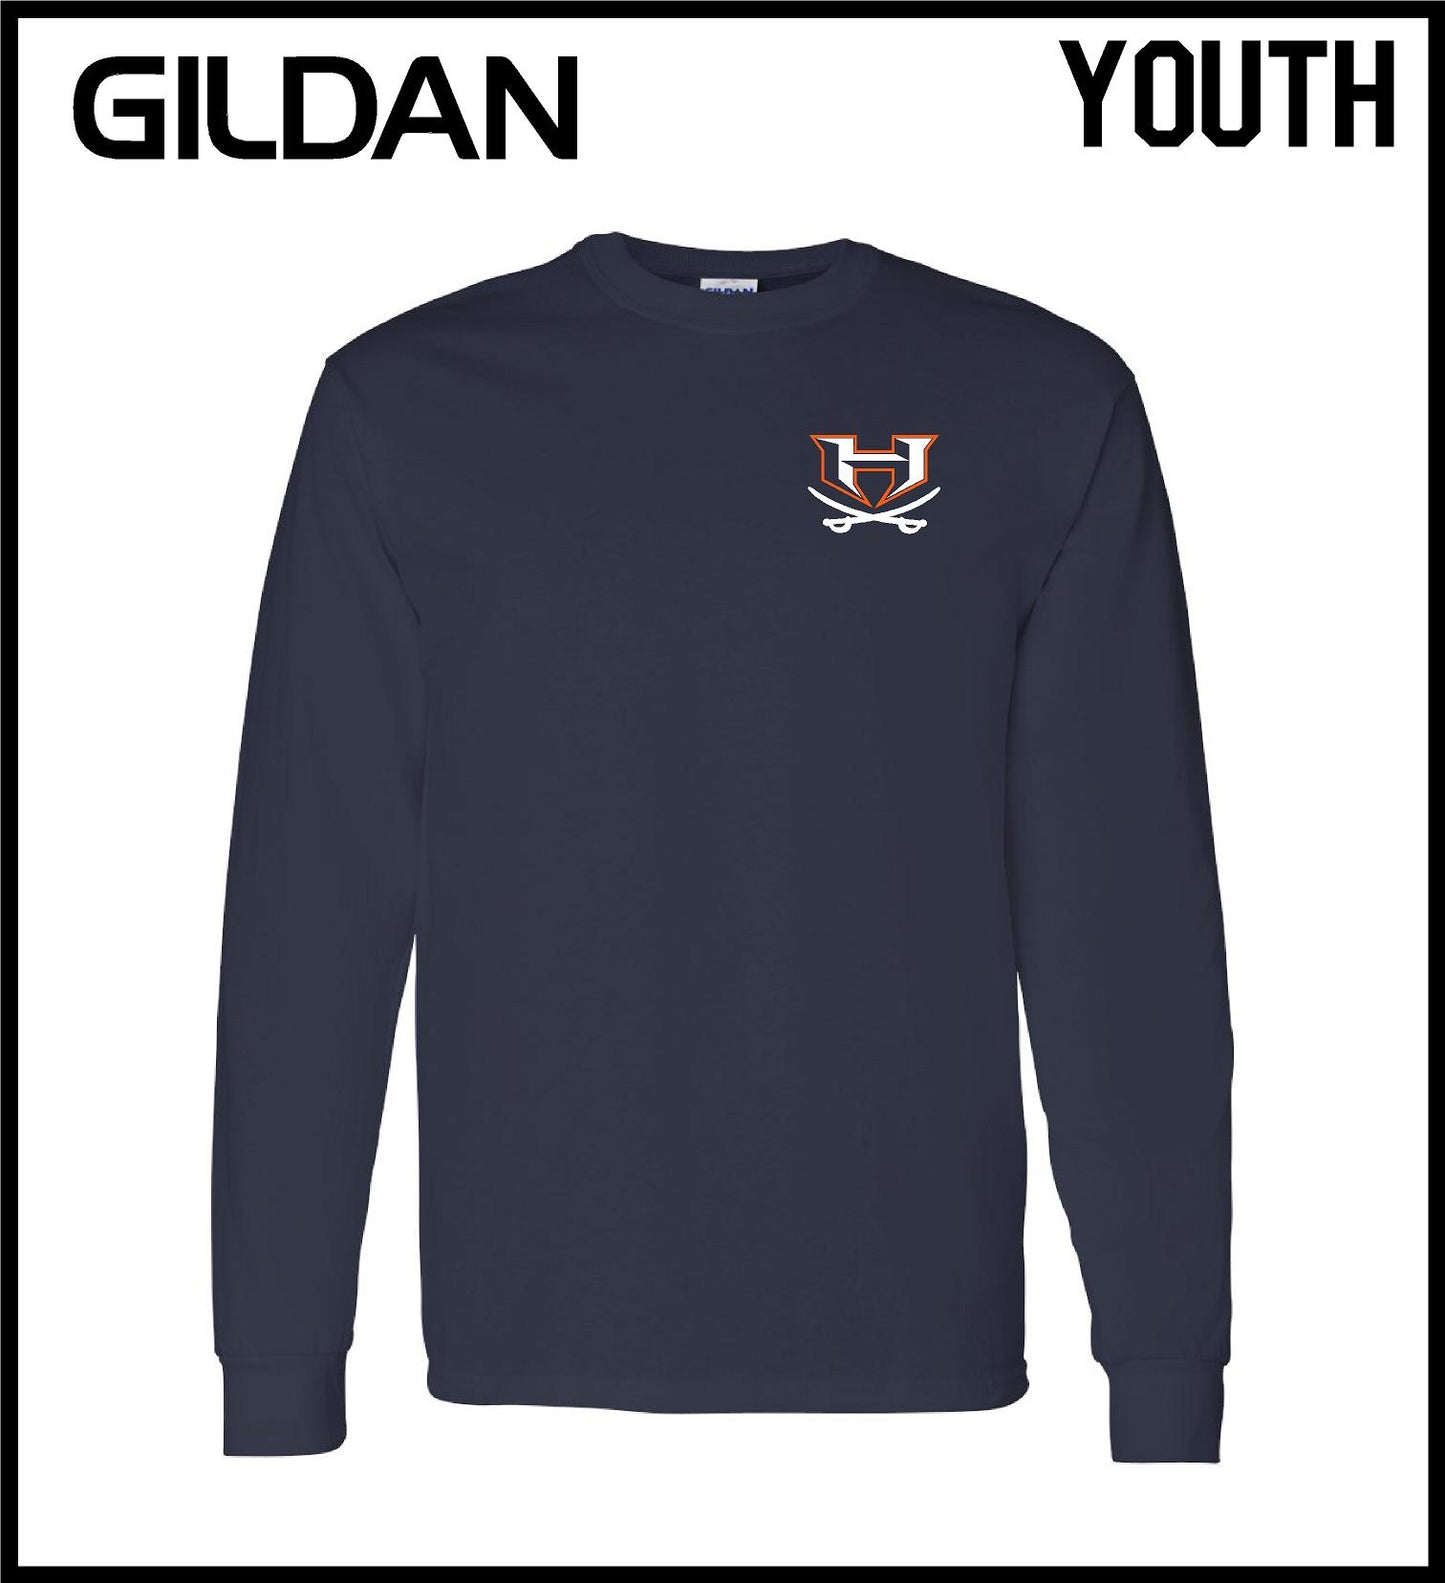 Gildan YOUTH Long Sleeve Tee 05